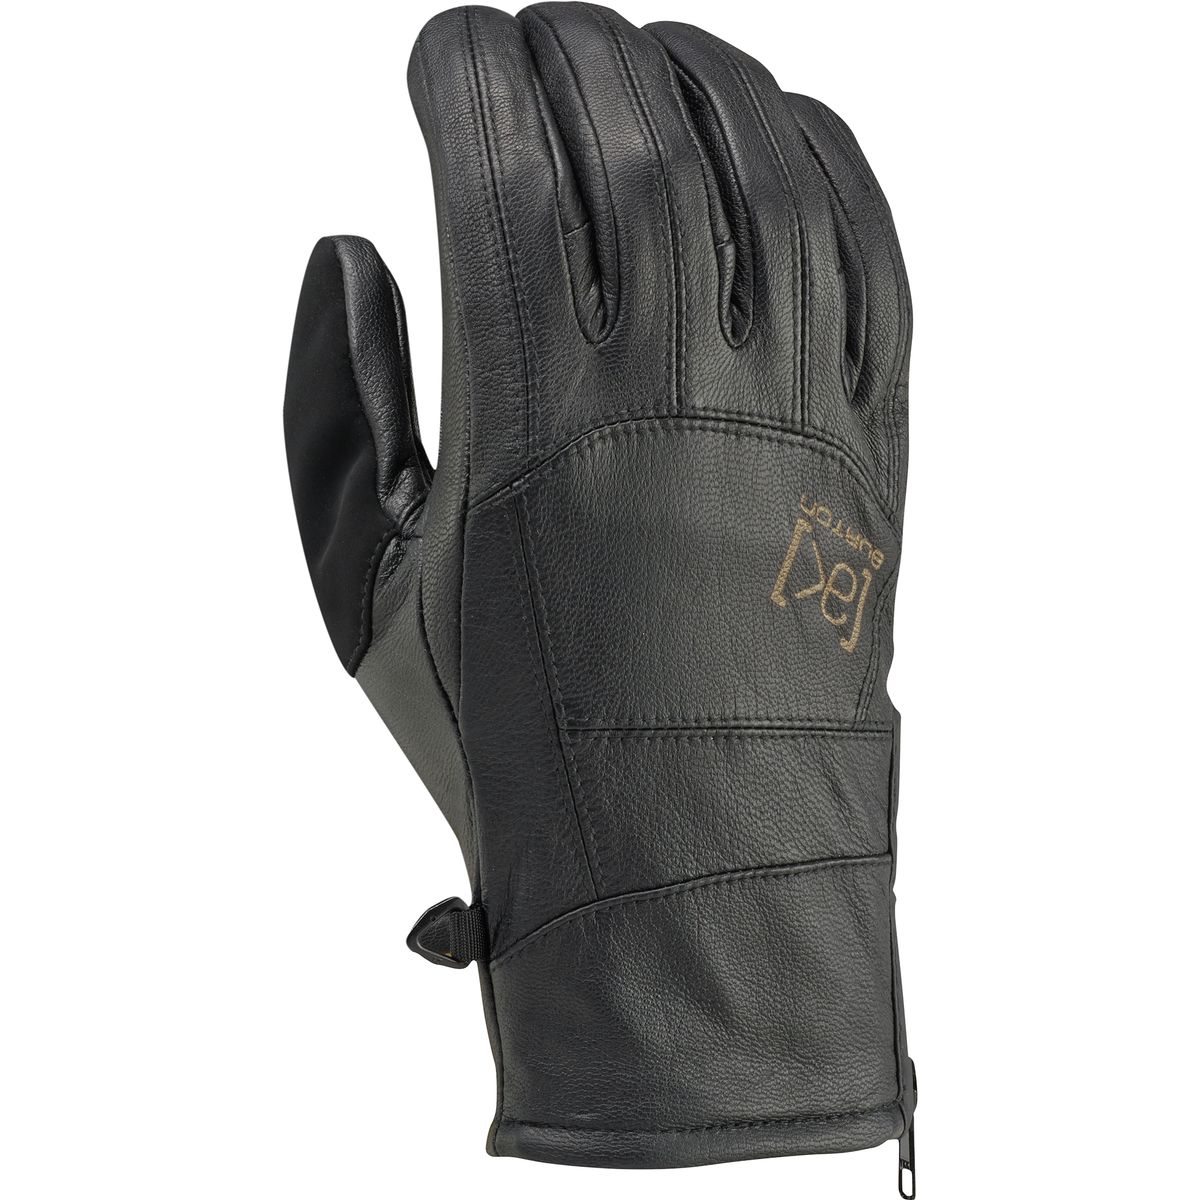 Burton AK Leather Tech Glove - Men's